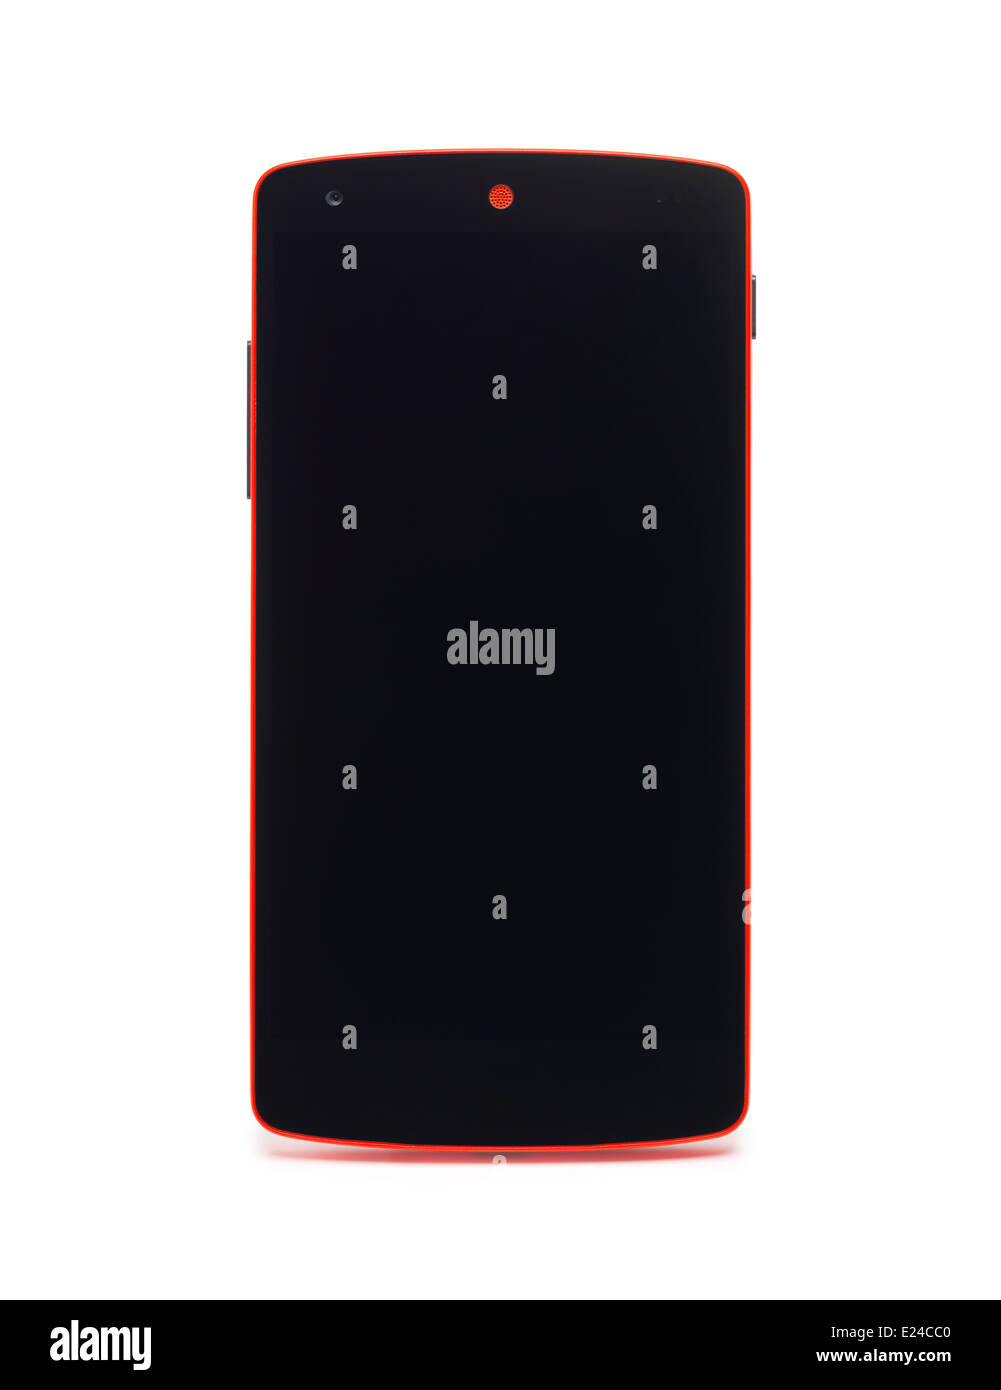 Google Android LG Nexus 5 telefono rosso con schermo vuoto isolato su sfondo bianco Foto Stock